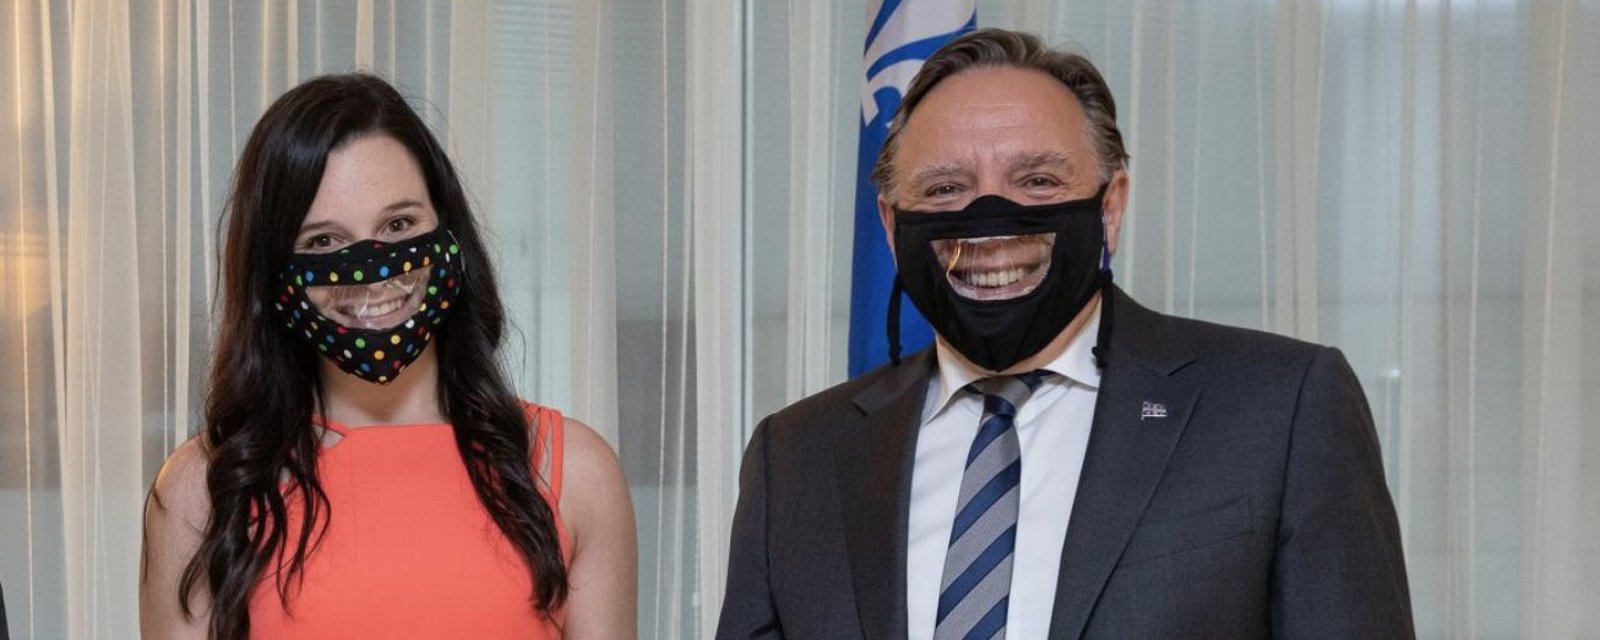 François Legault fait exploser le Web avec le masque pour malentendants de Rosalie Taillefer-Simard